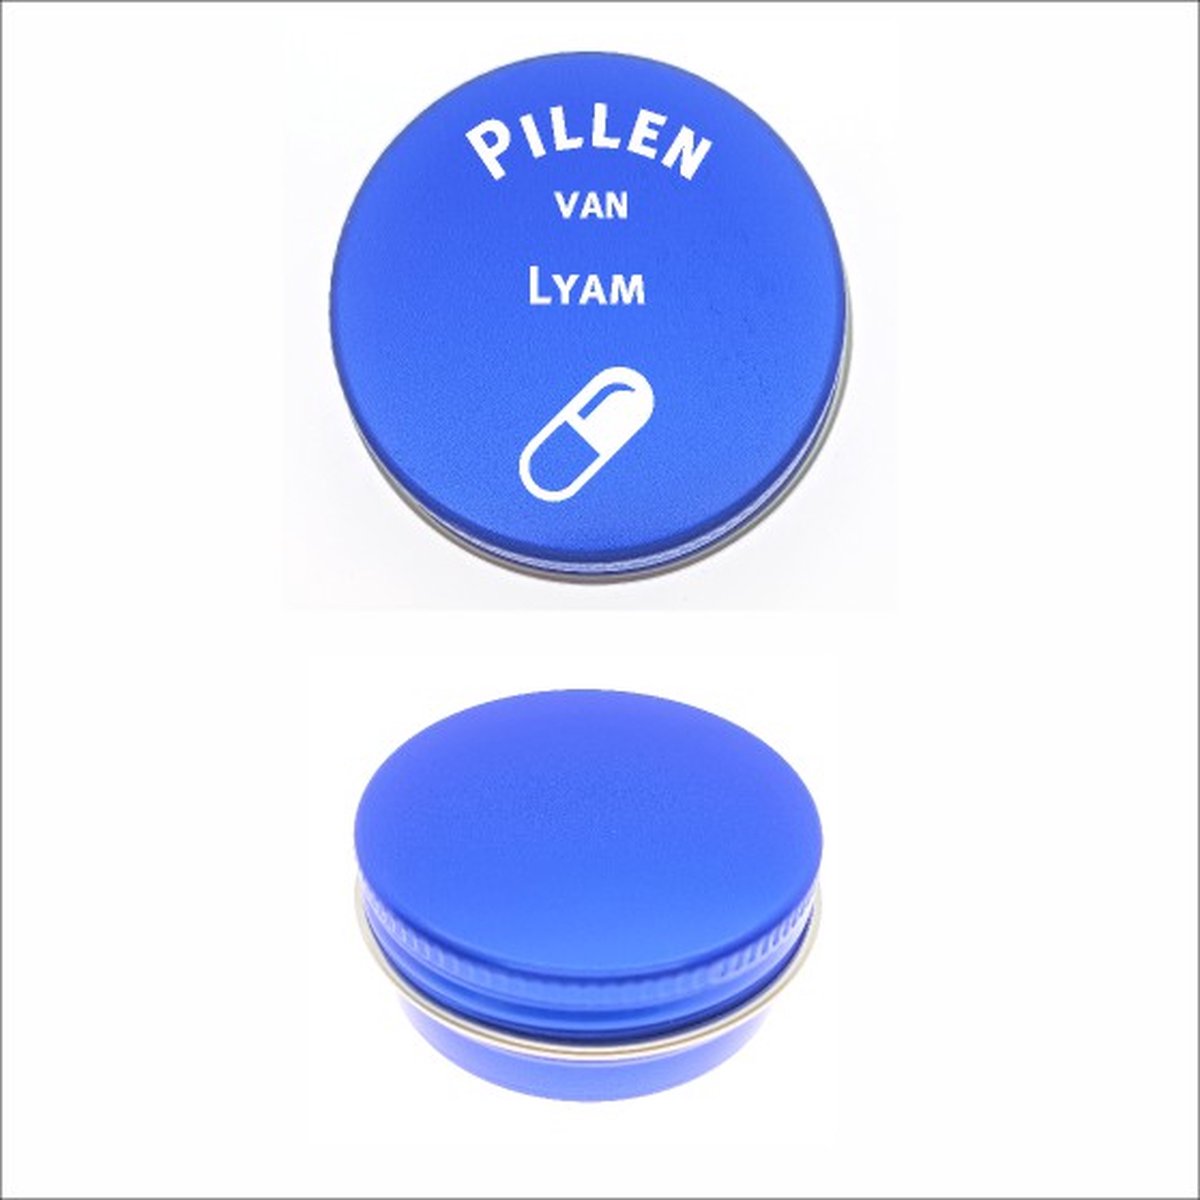 Pillen Blikje Met Naam Gravering - Lyam